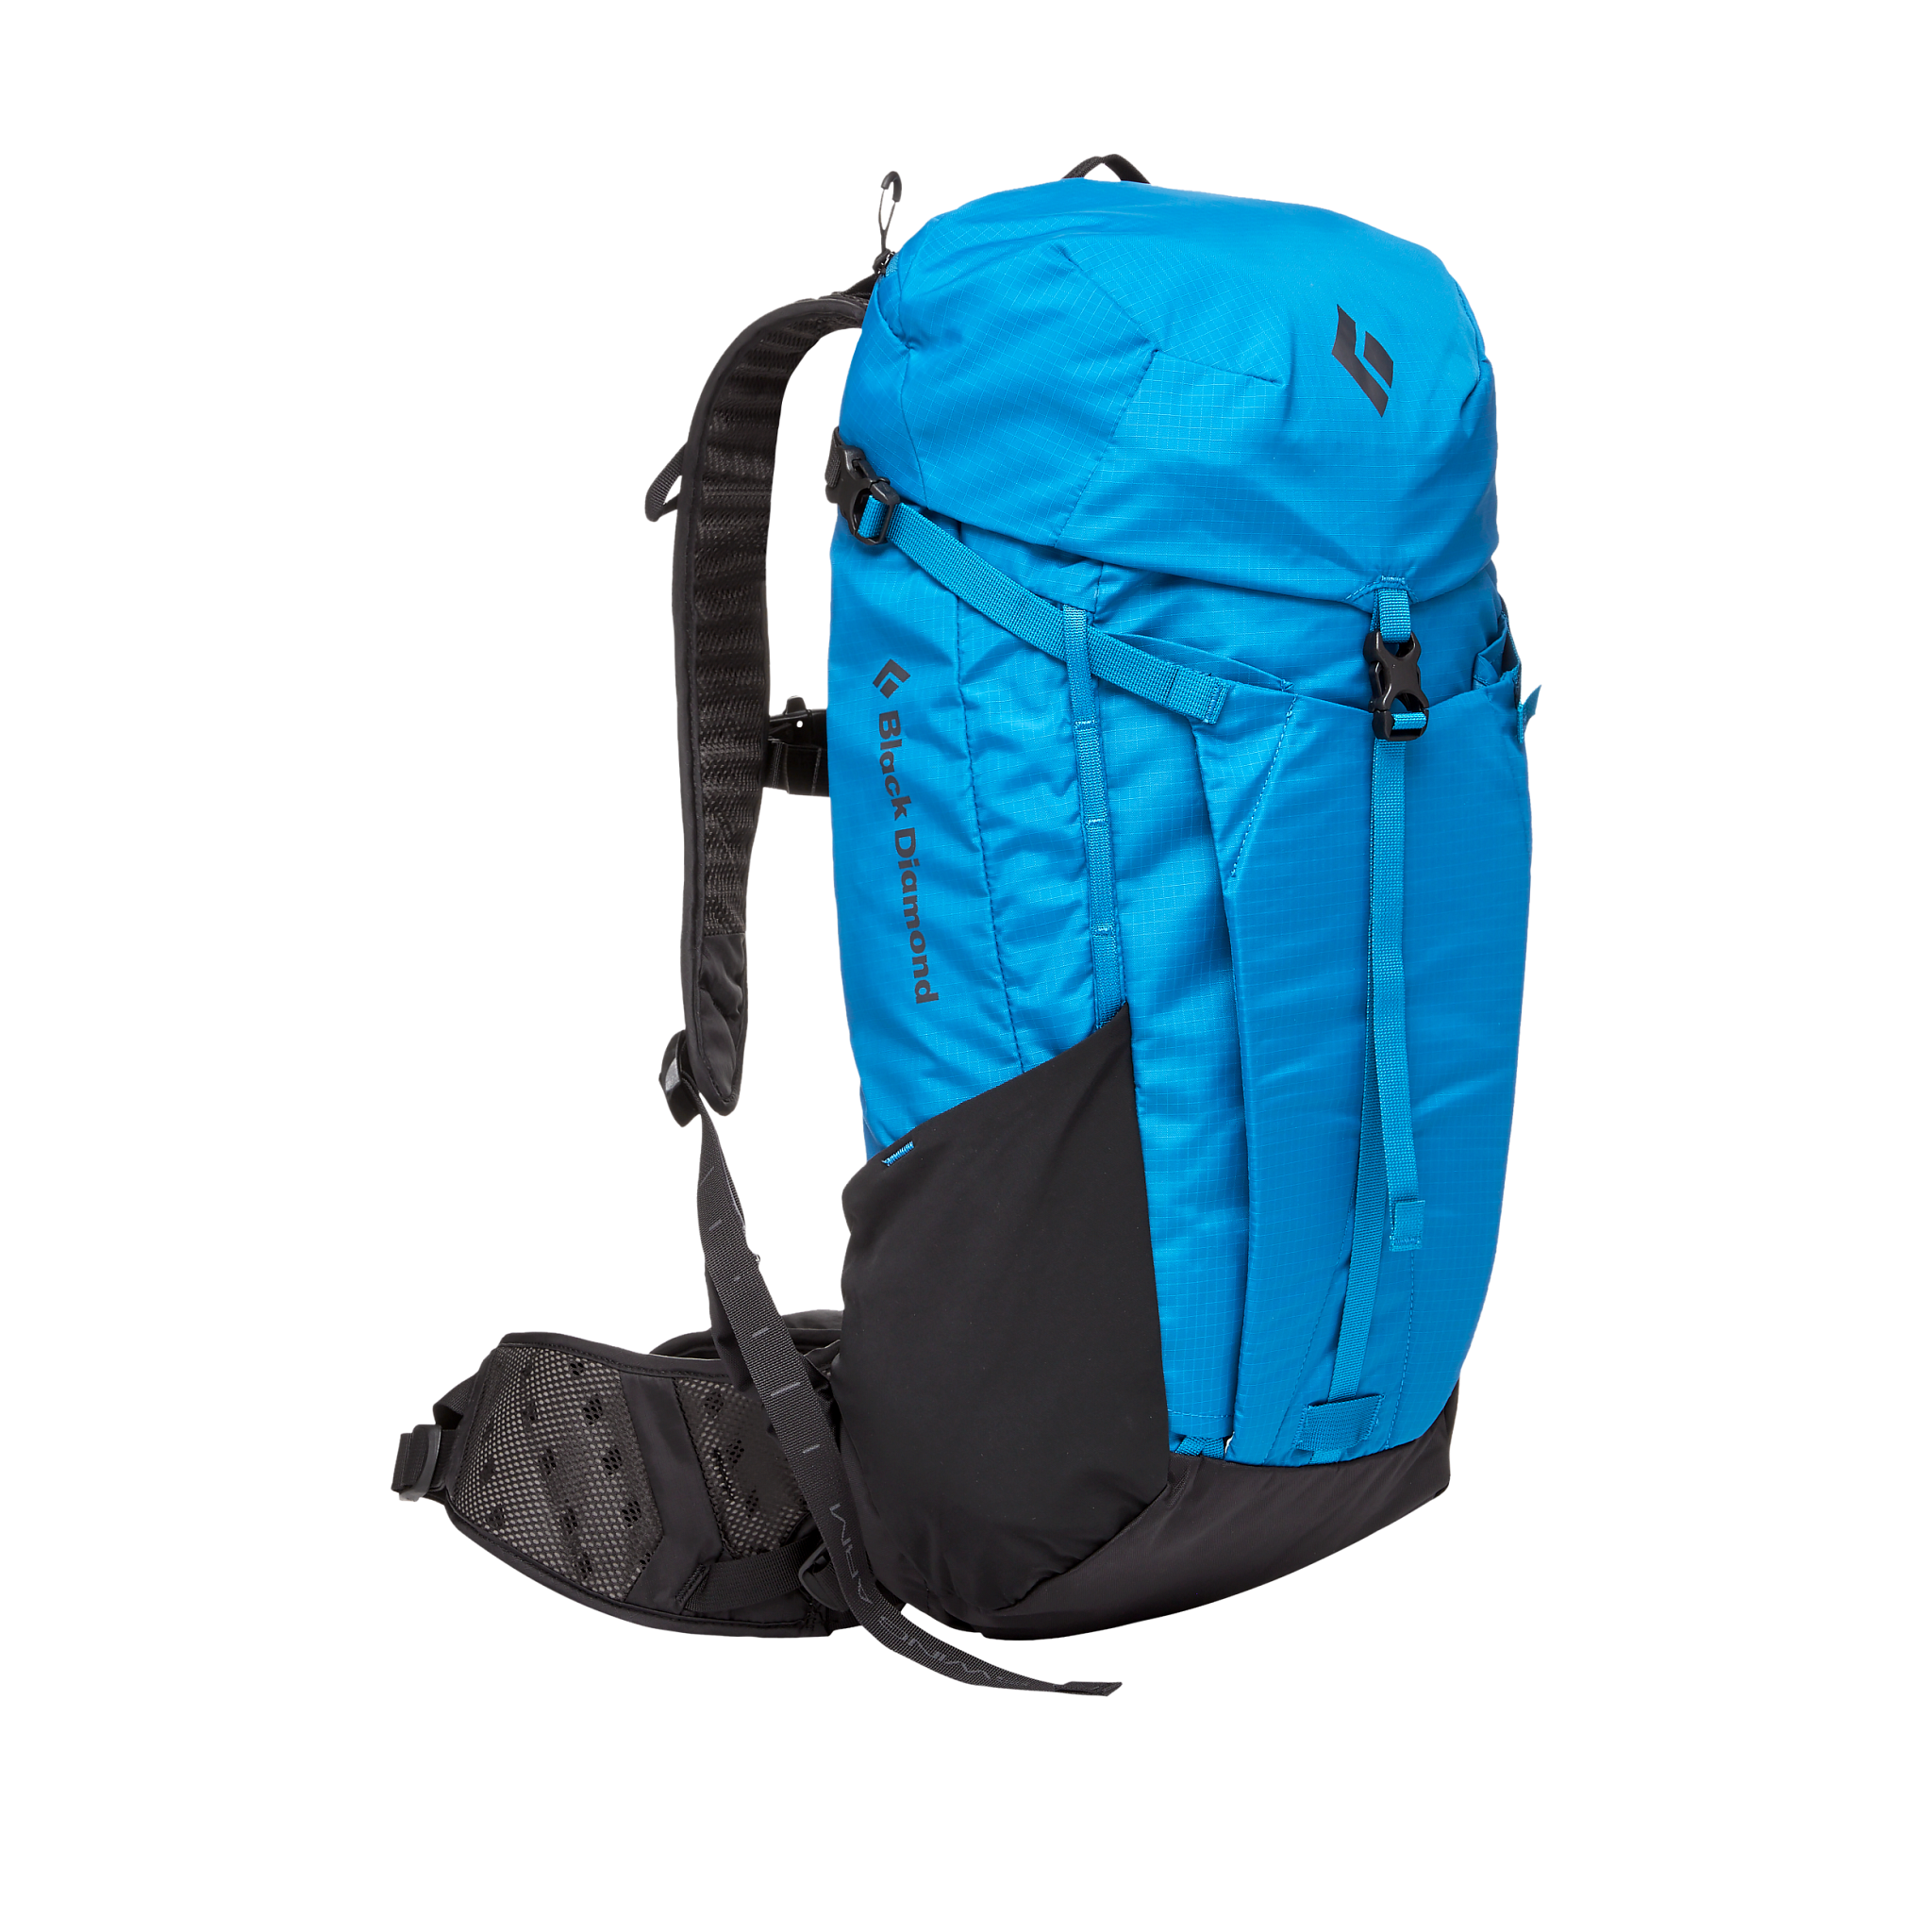 Black Diamond Equipment Bolt 24 Pack Backpack, in Kingfisher